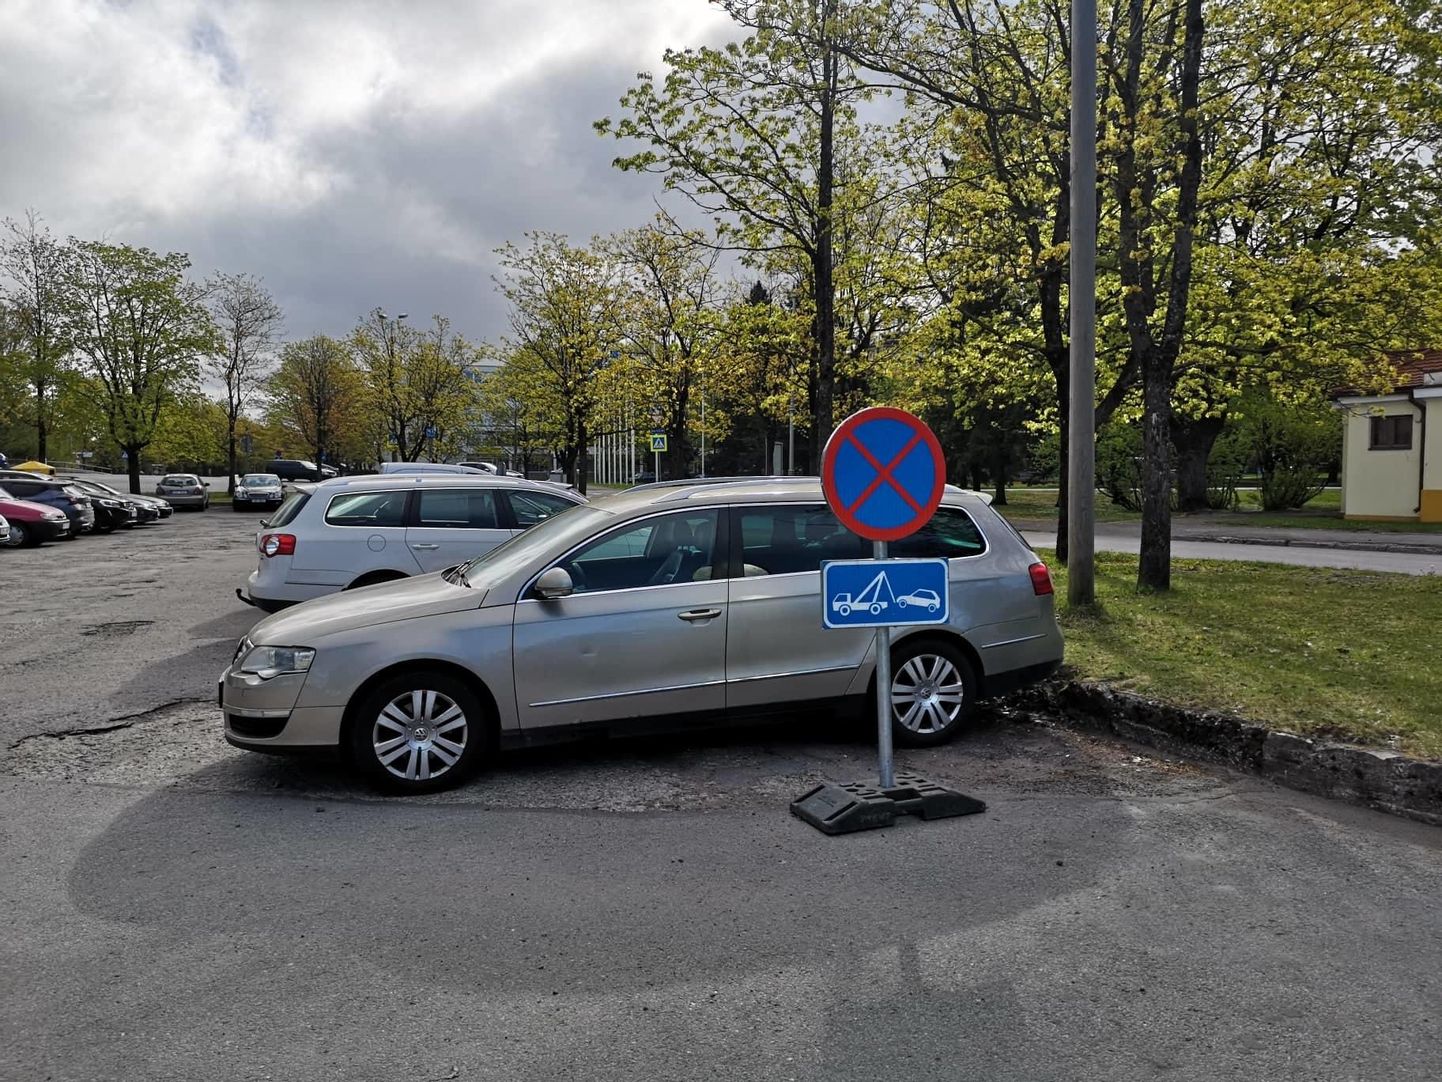 Водители продолжают здесь парковаться, несмотря на запрещающие знаки.